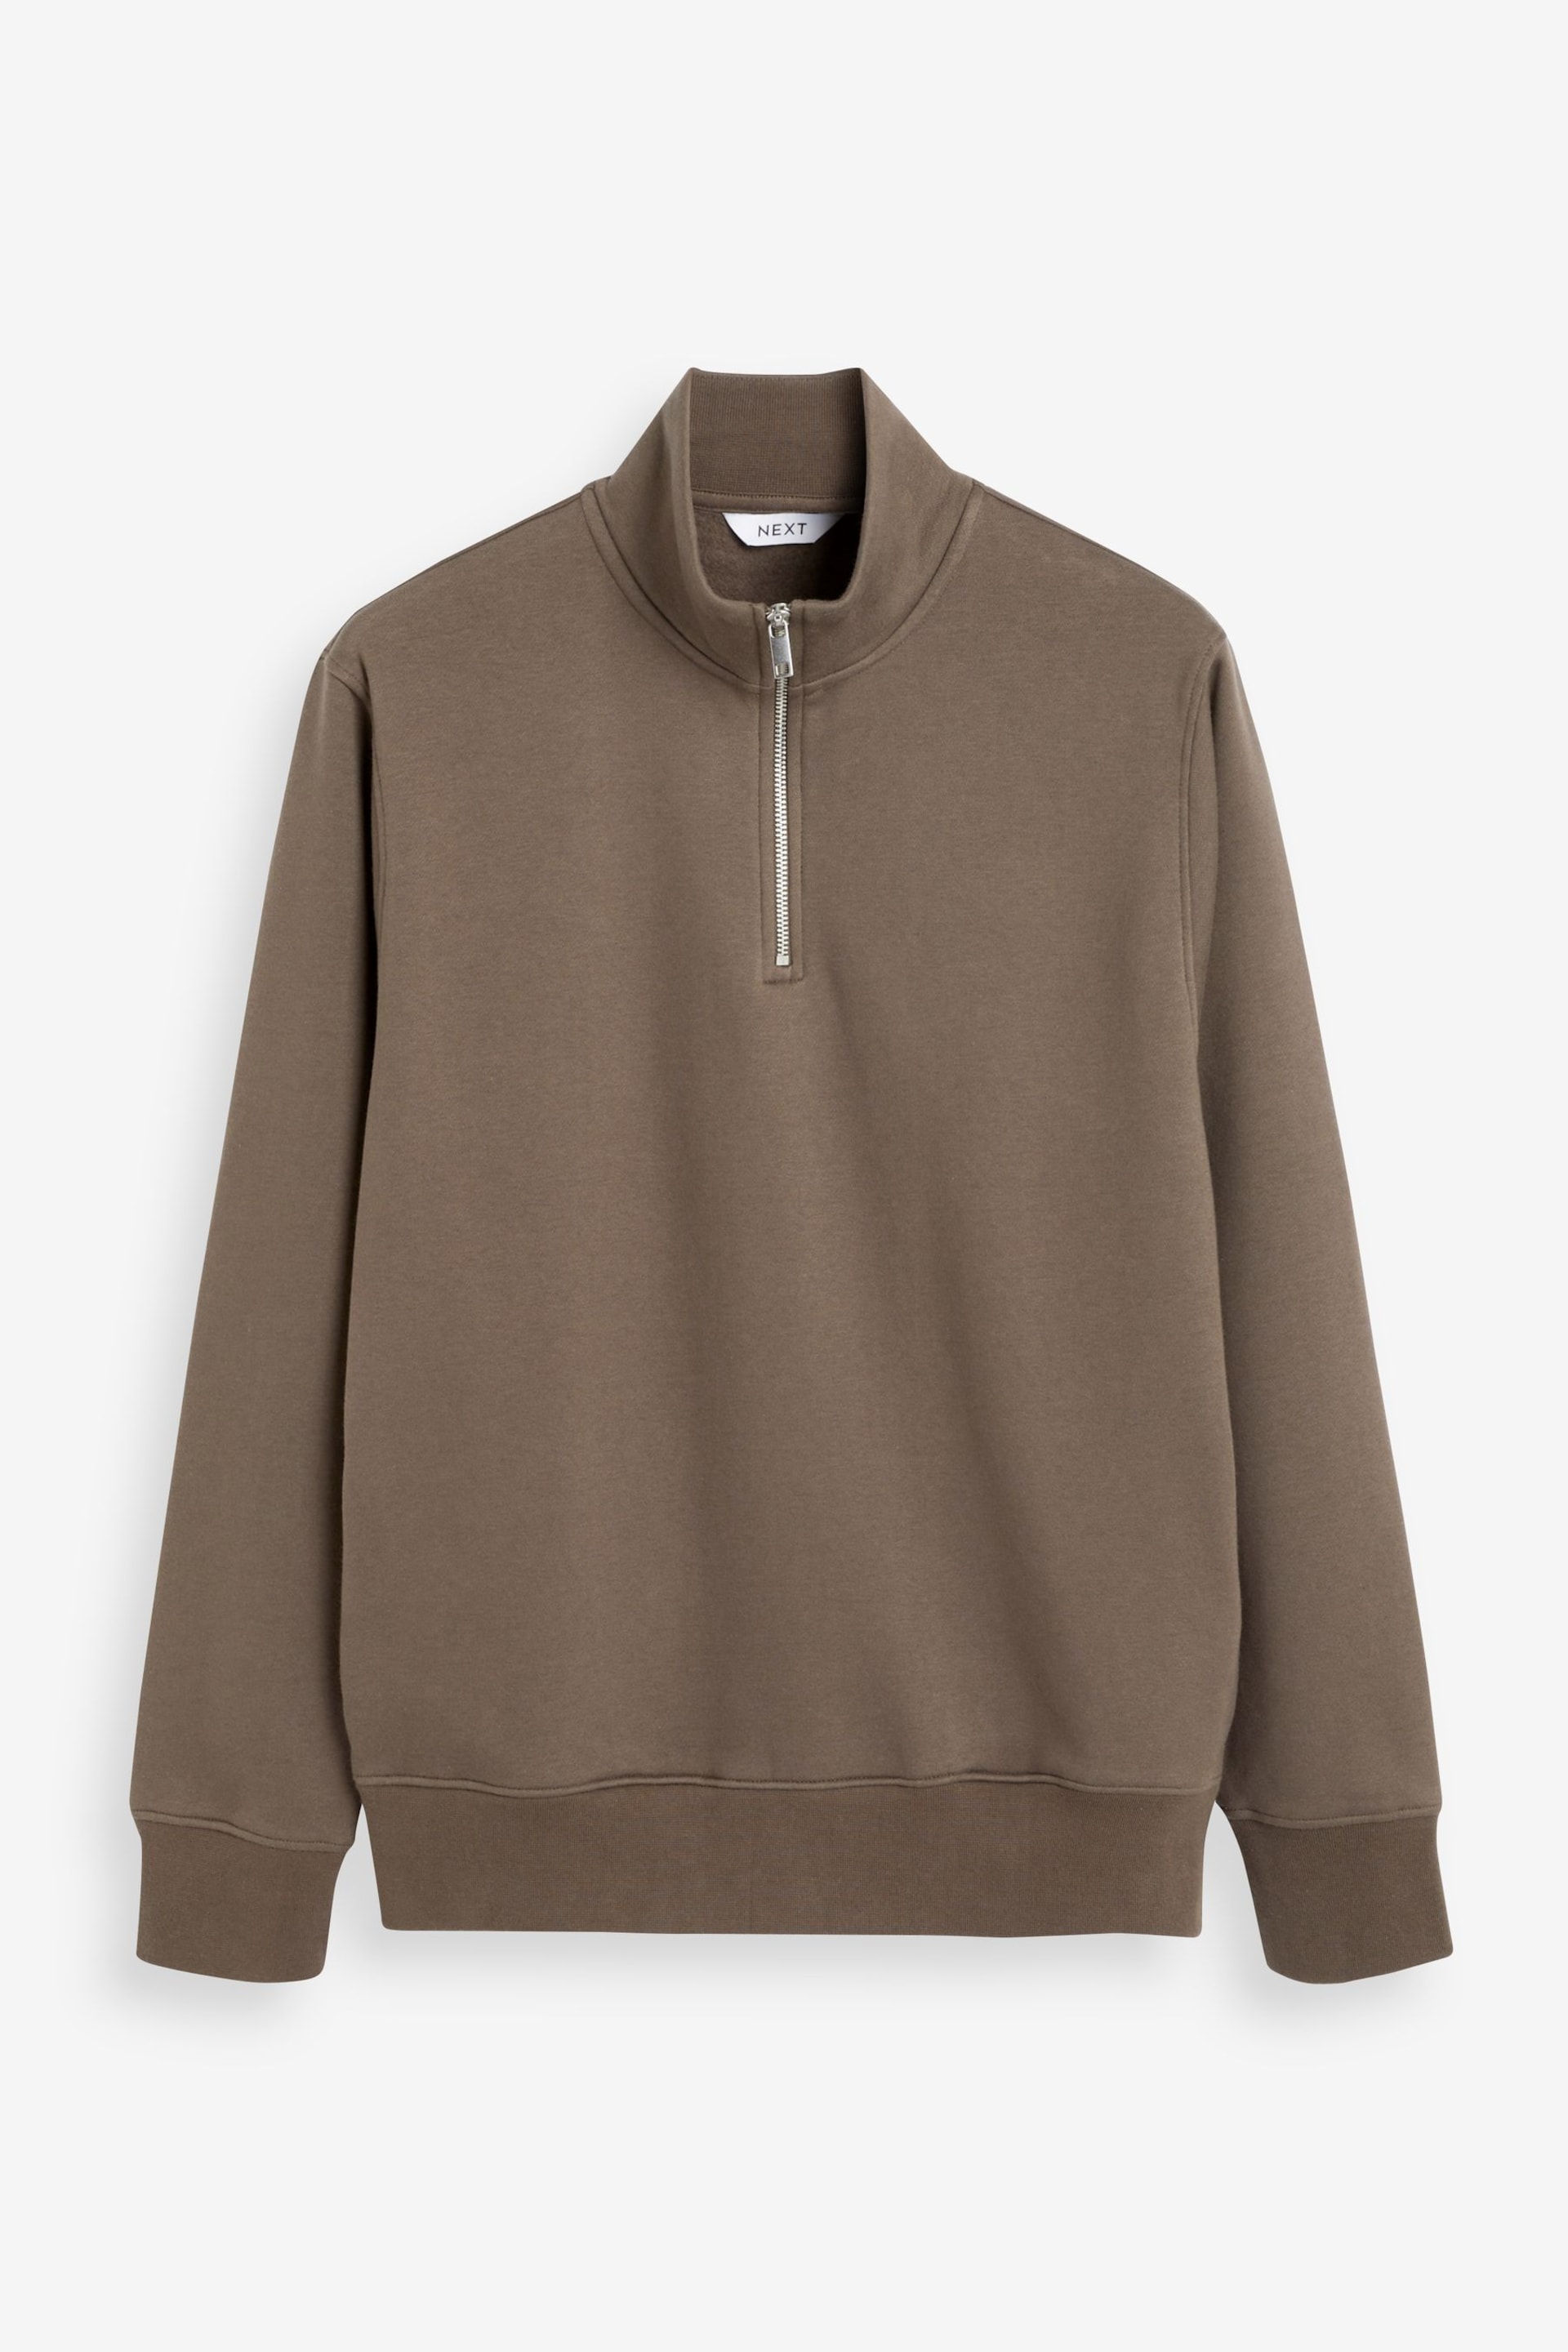 Brown Zip Neck Jersey Cotton Rich Sweatshirt - Image 6 of 8